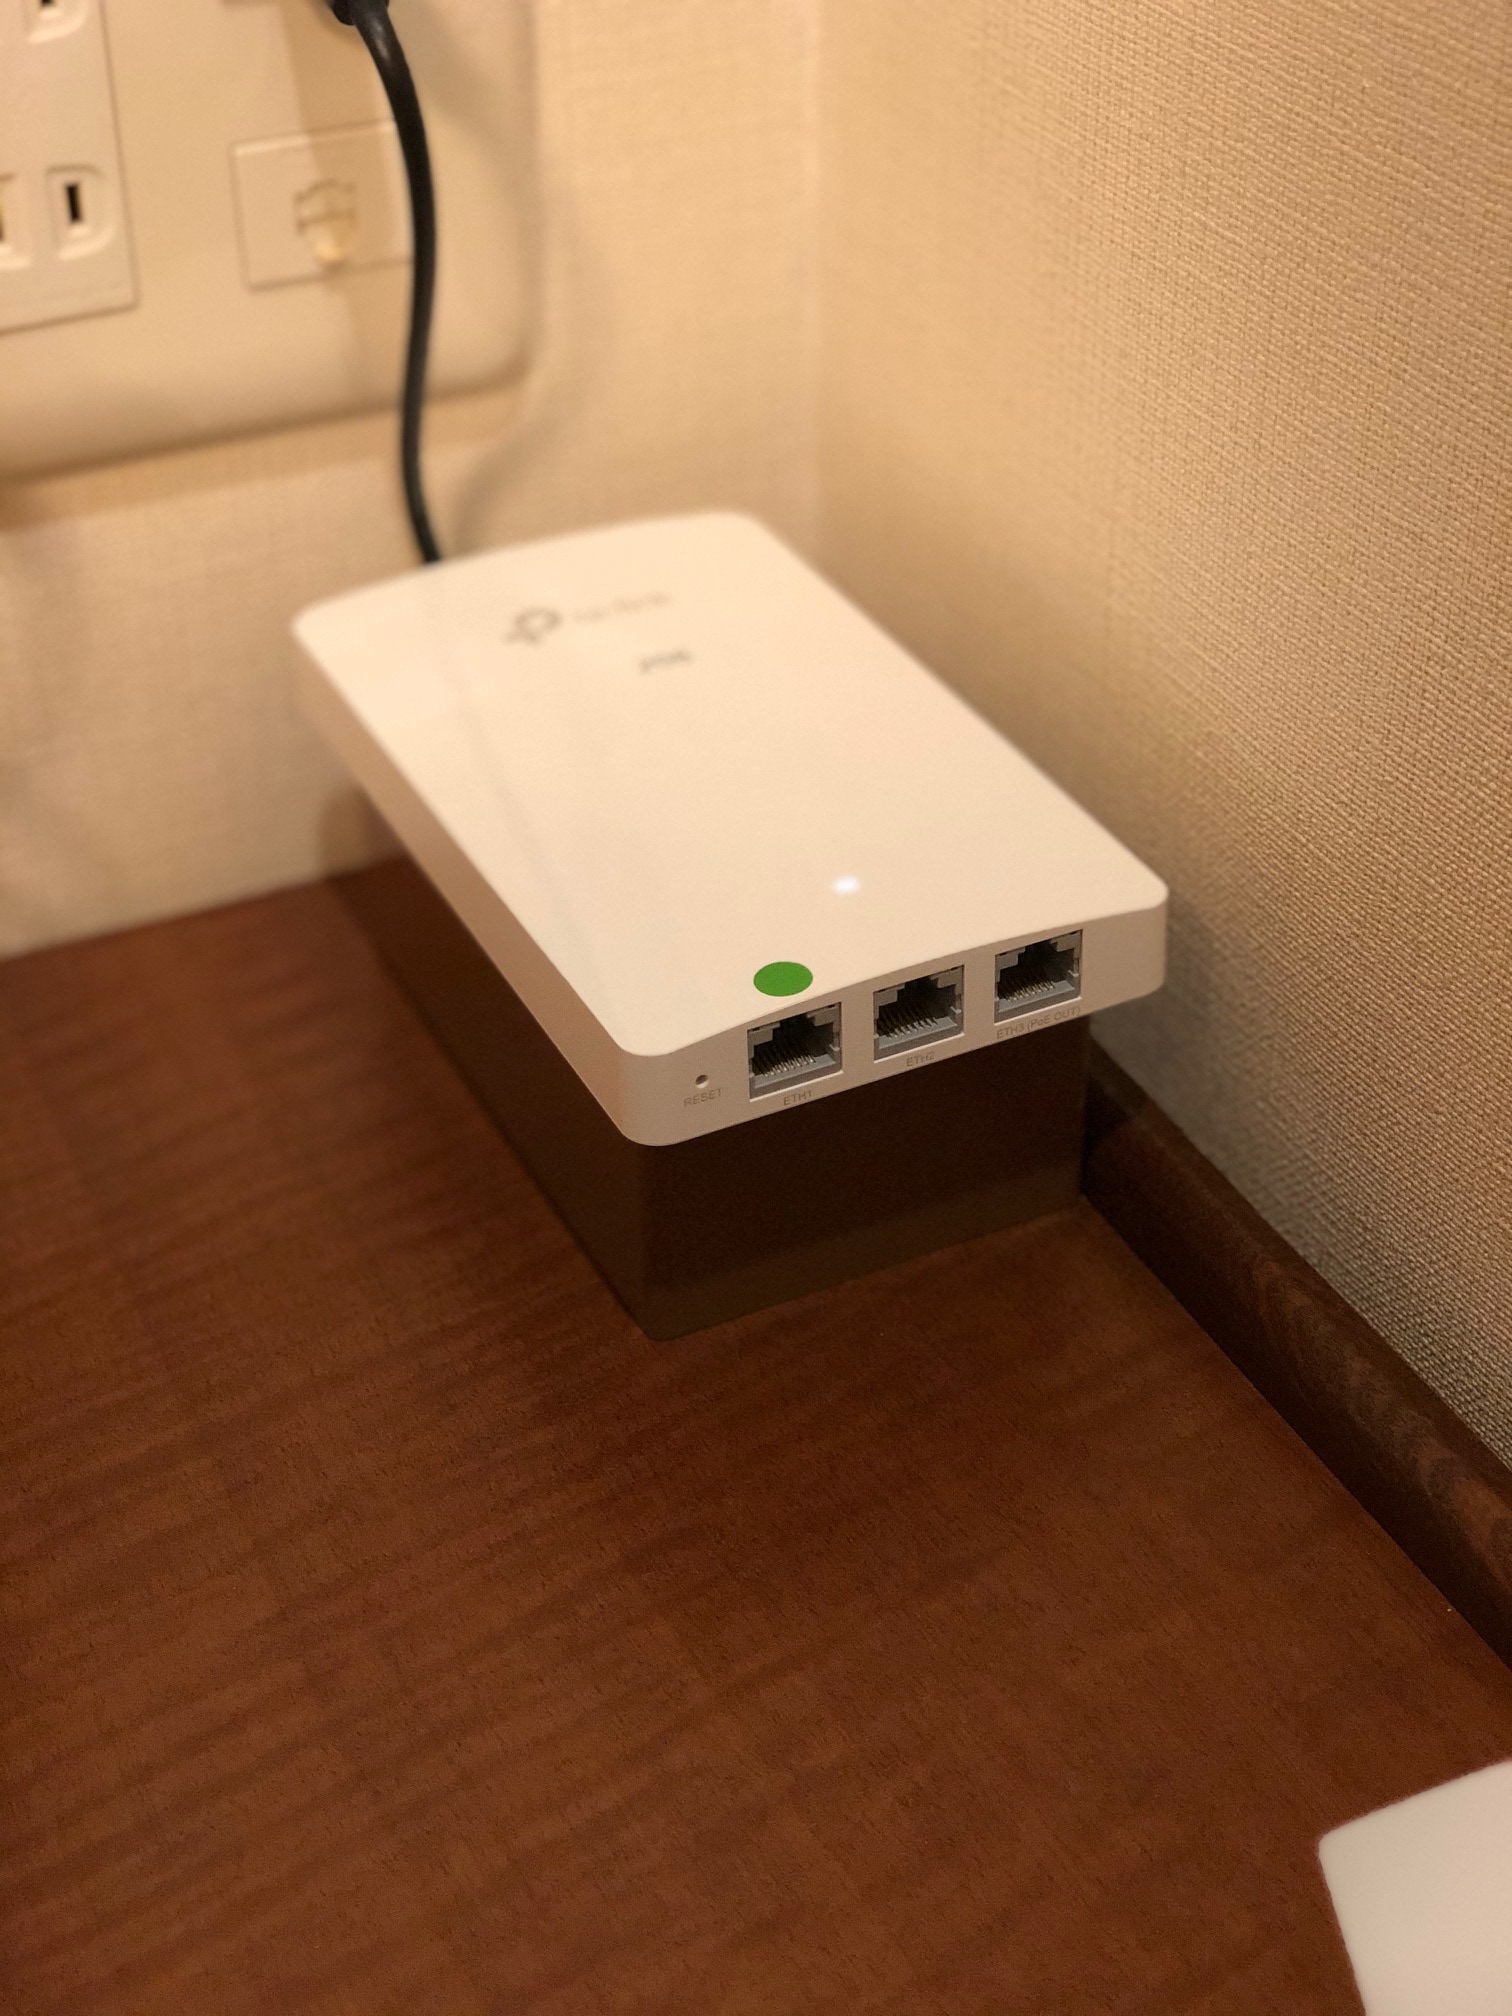 Kamar tamu individu dengan Wi-Fi router individu